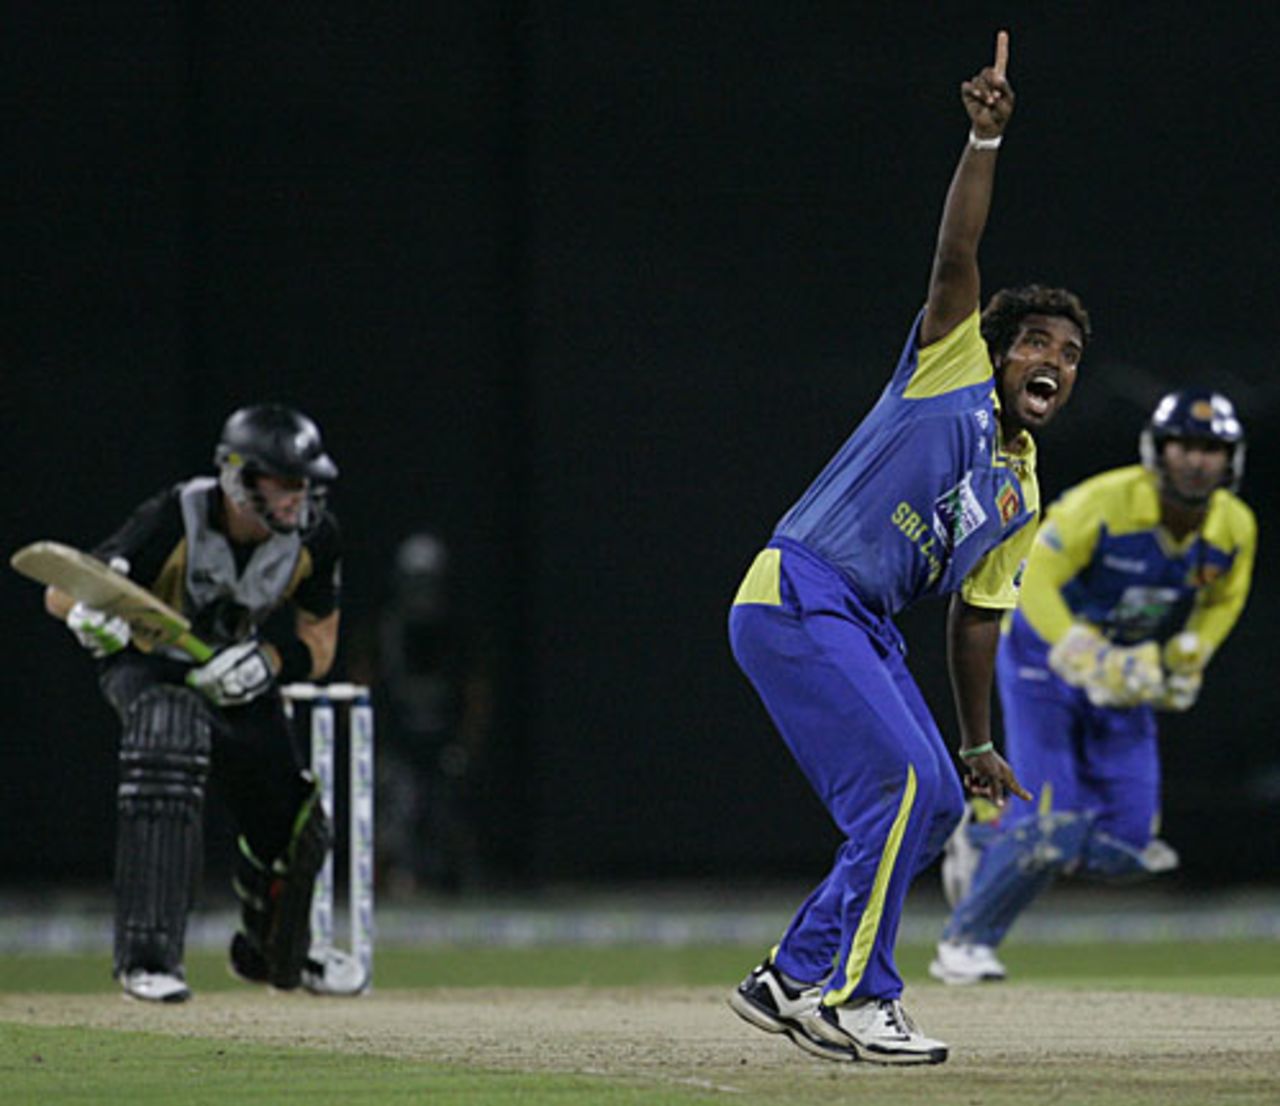 Malinga Bandara unsuccessfully appeals for Martin Guptill's wicket, Sri Lanka v New Zealand, 1st Twenty20, Colombo, September 2, 2009